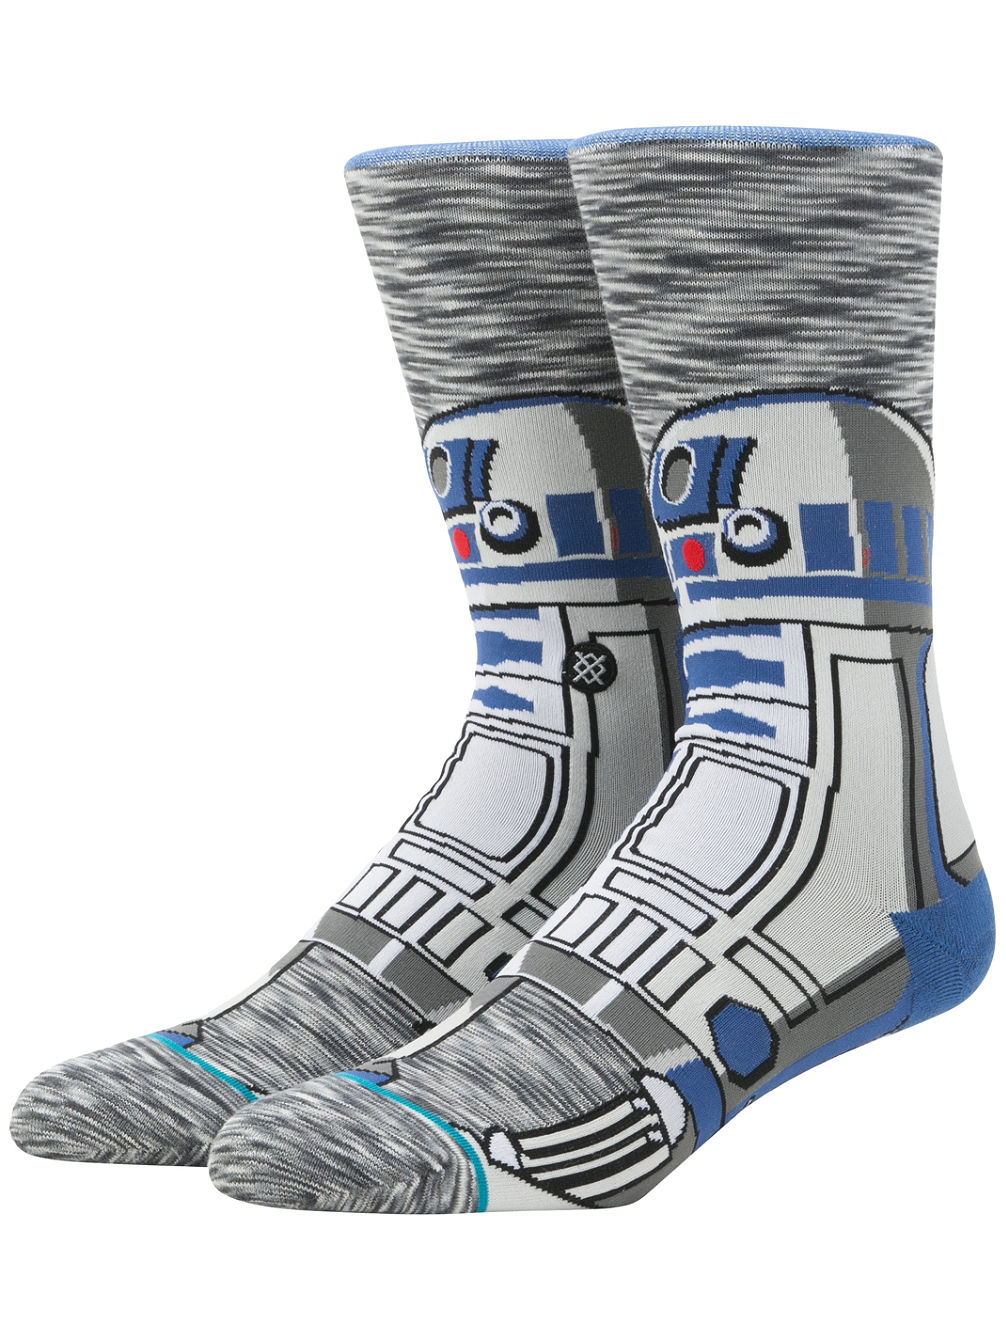 R2 Unit Star Wars Chaussettes